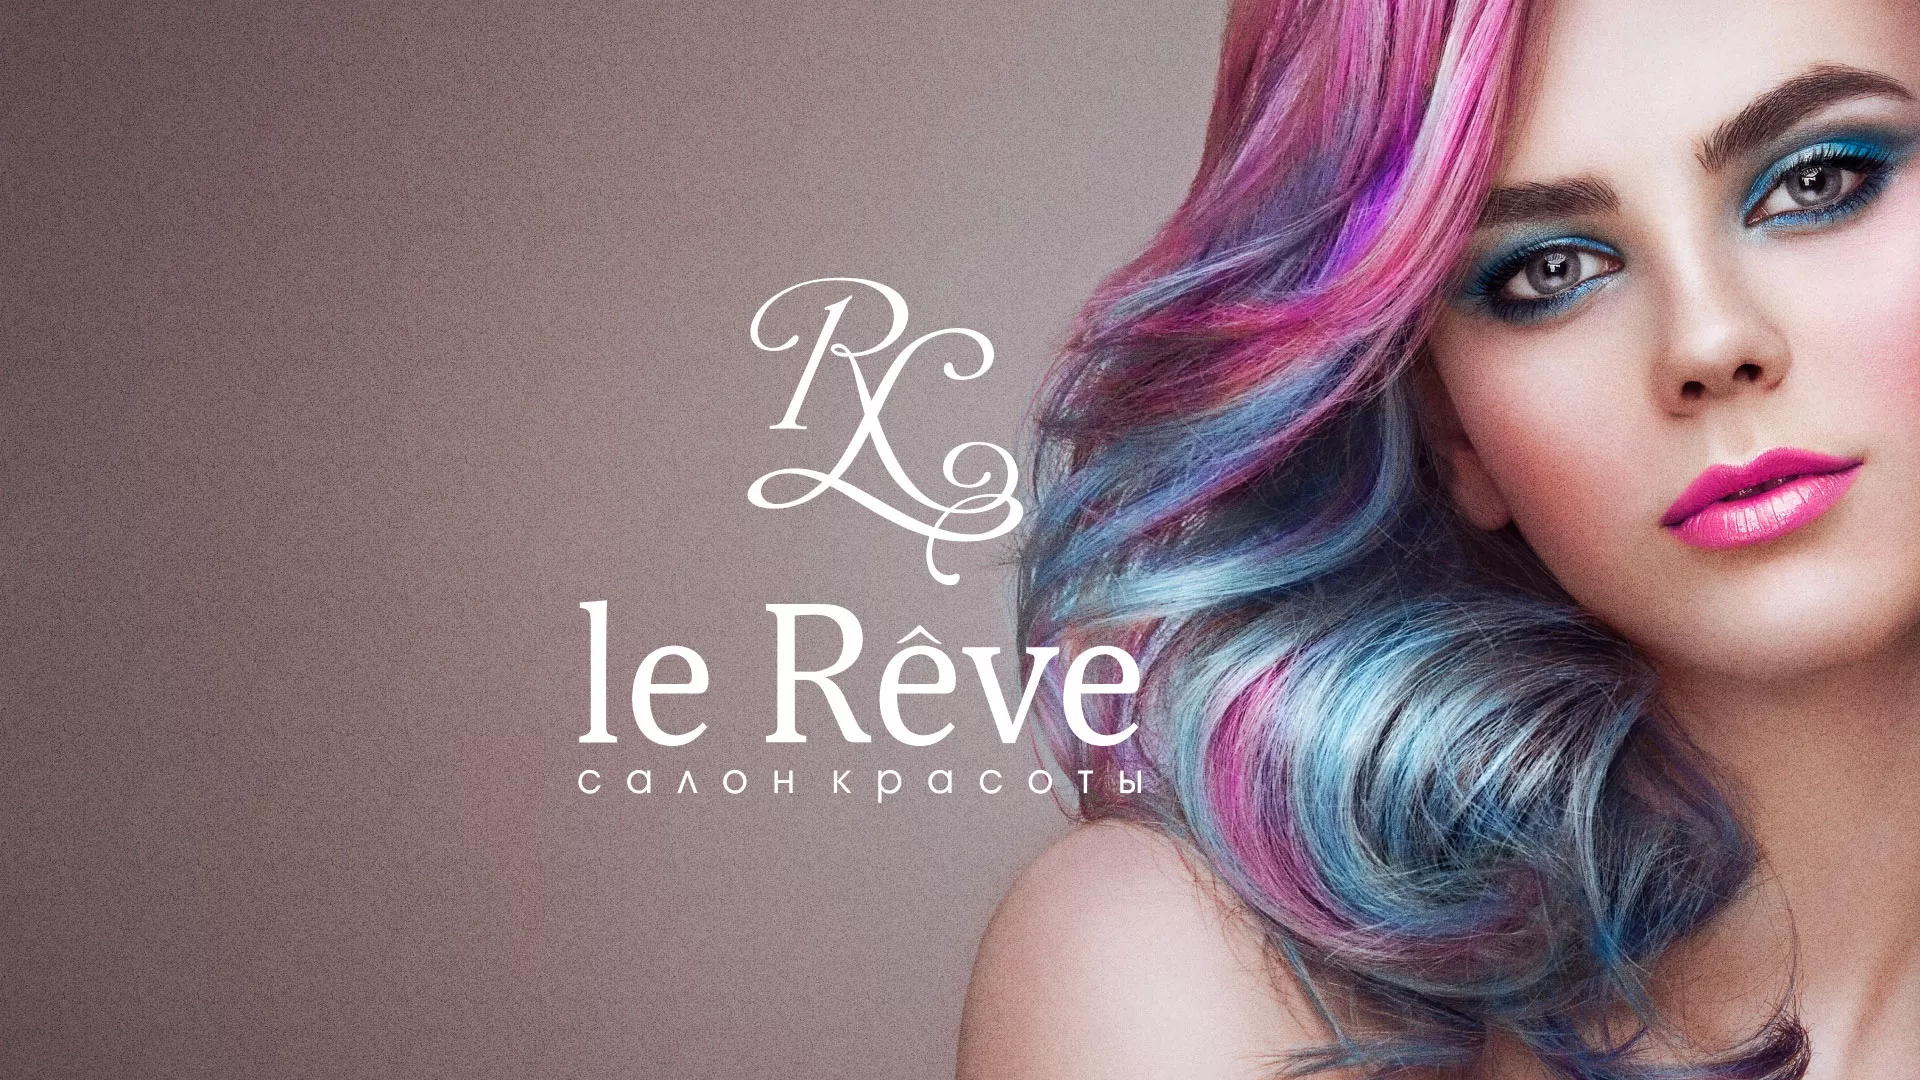 Создание сайта для салона красоты «Le Reve» в Кирове